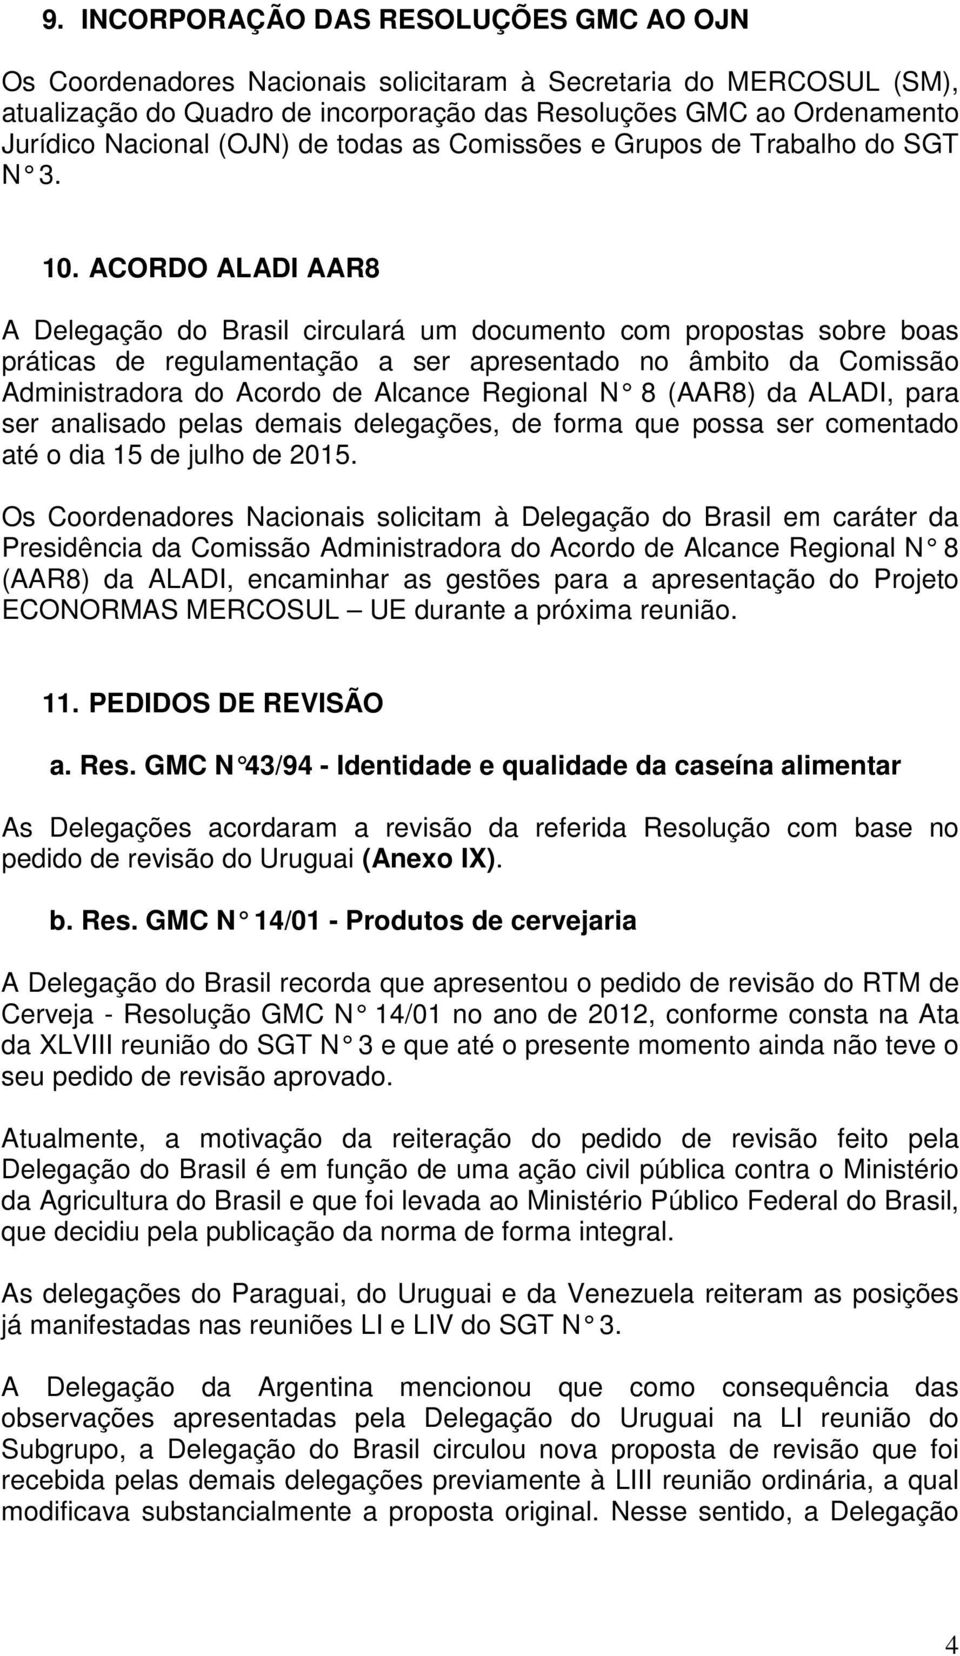 ACORDO ALADI AAR8 A Delegação do Brasil circulará um documento com propostas sobre boas práticas de regulamentação a ser apresentado no âmbito da Comissão Administradora do Acordo de Alcance Regional